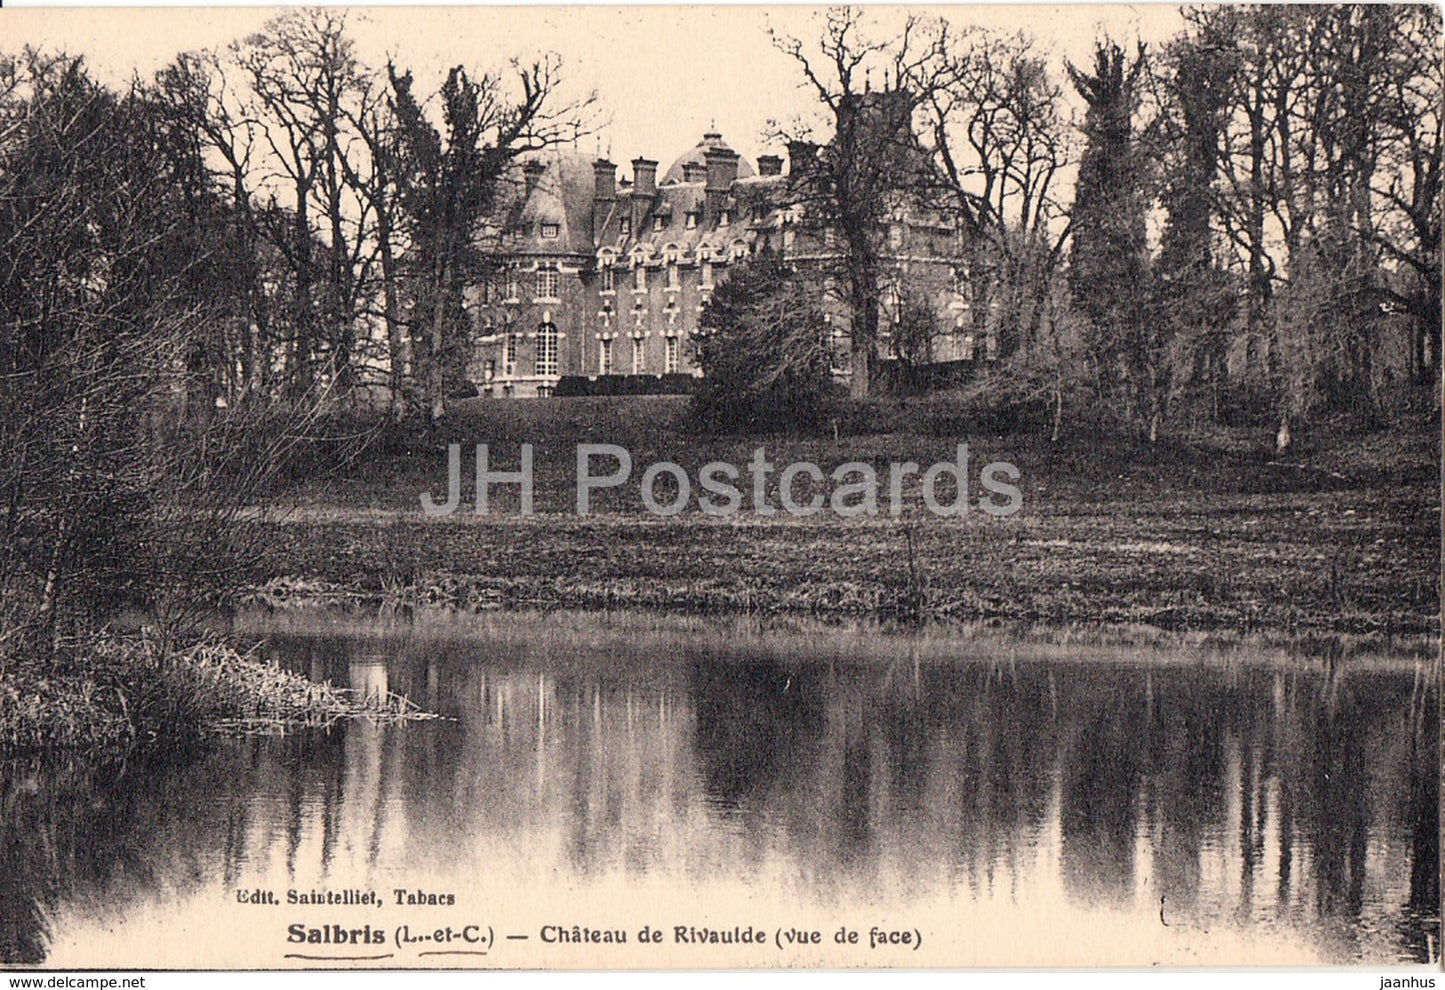 Salbris - Chateau de Rivaulde - vue de face - castle - old postcard - 1935 - France - used